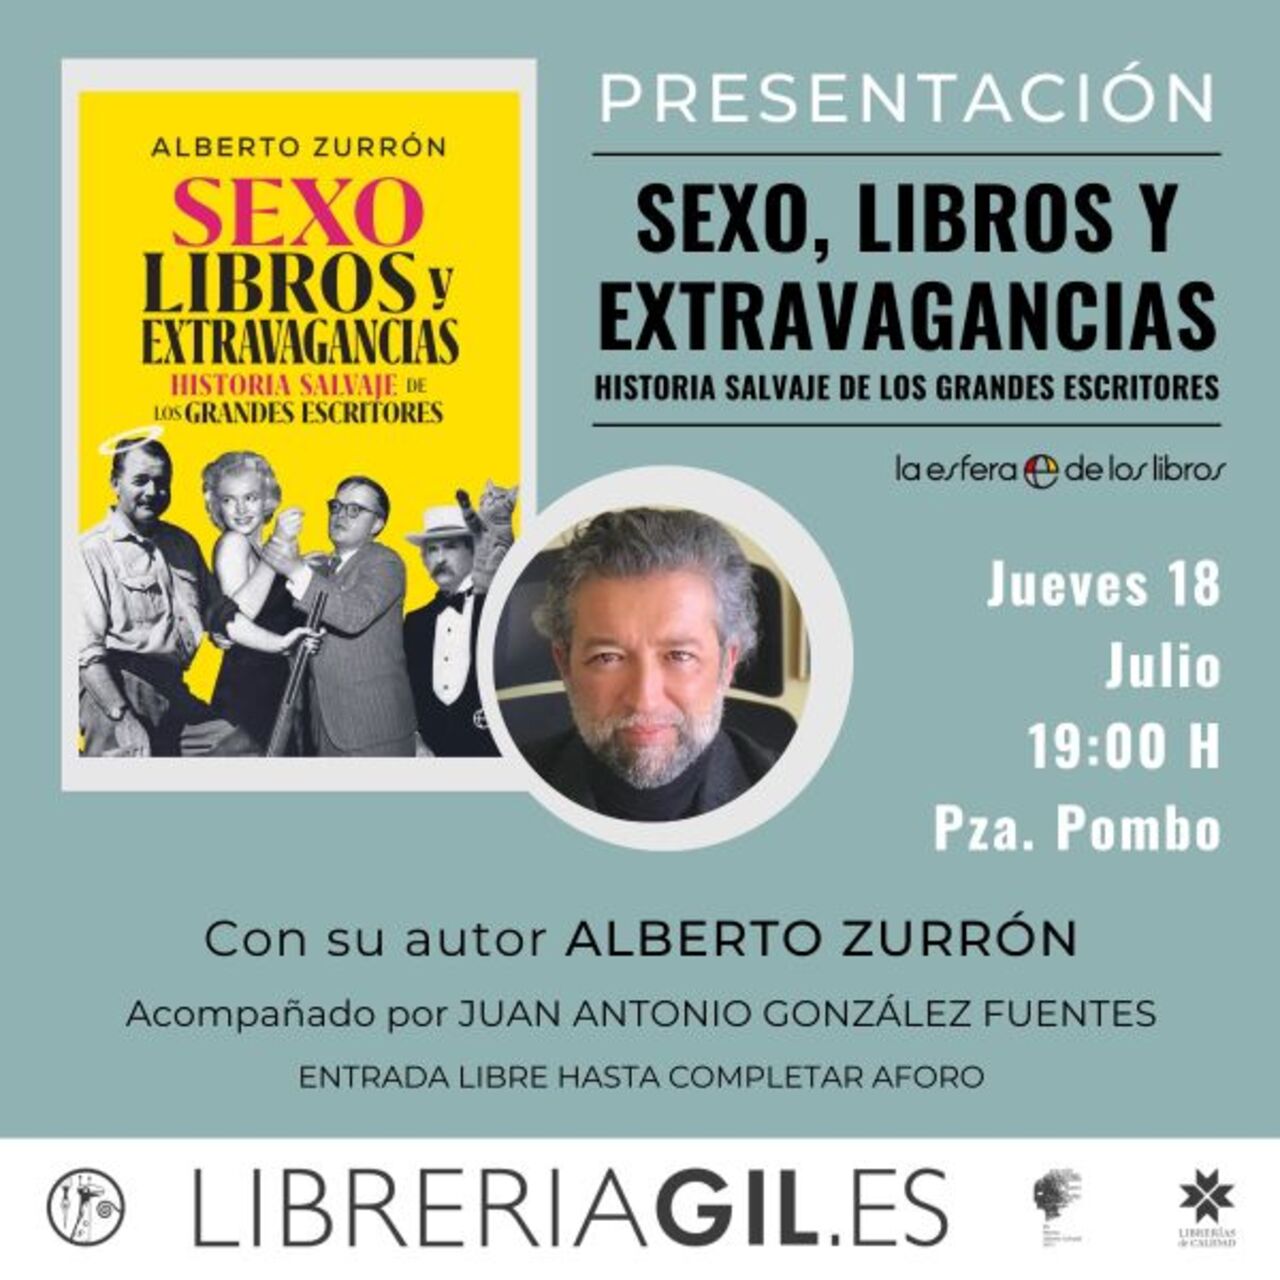 Alberto Zurrón presenta el libro "Sexo, libros y extravagancias" 